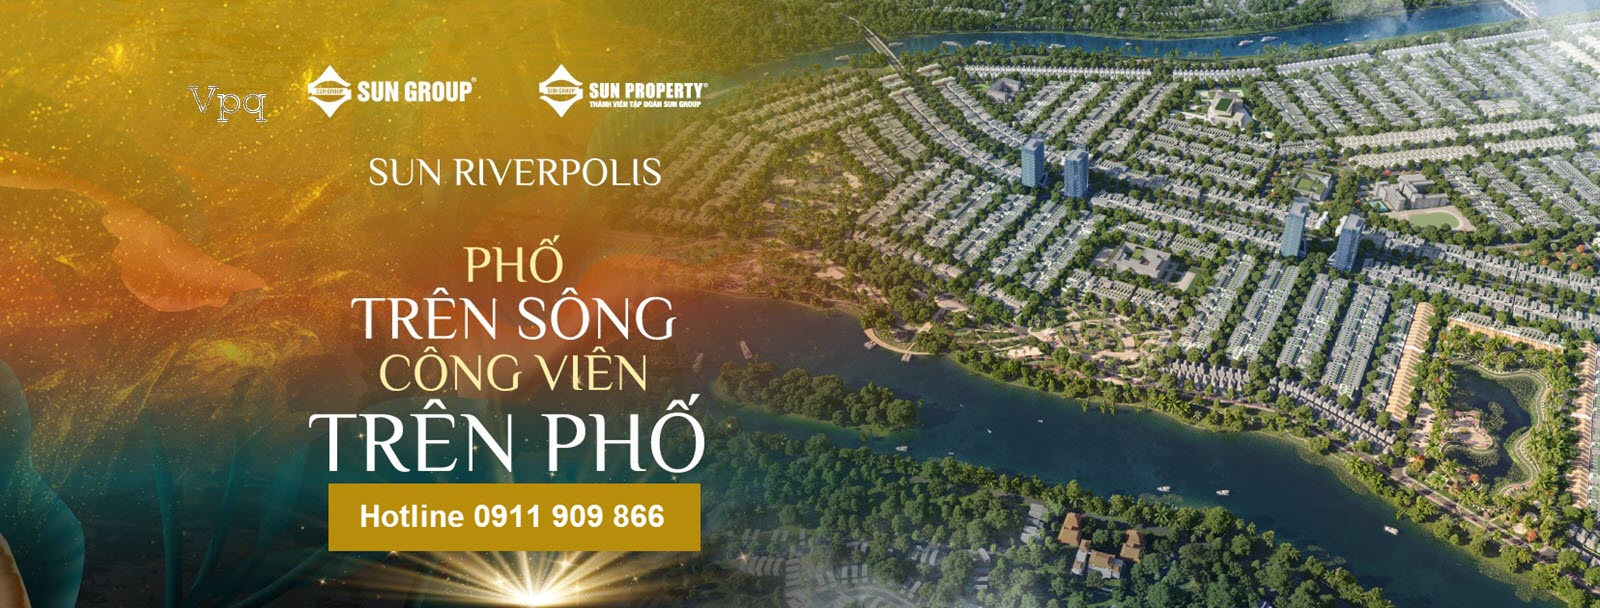 Sun riverpolis - Phố trên sông, công viên trên phố